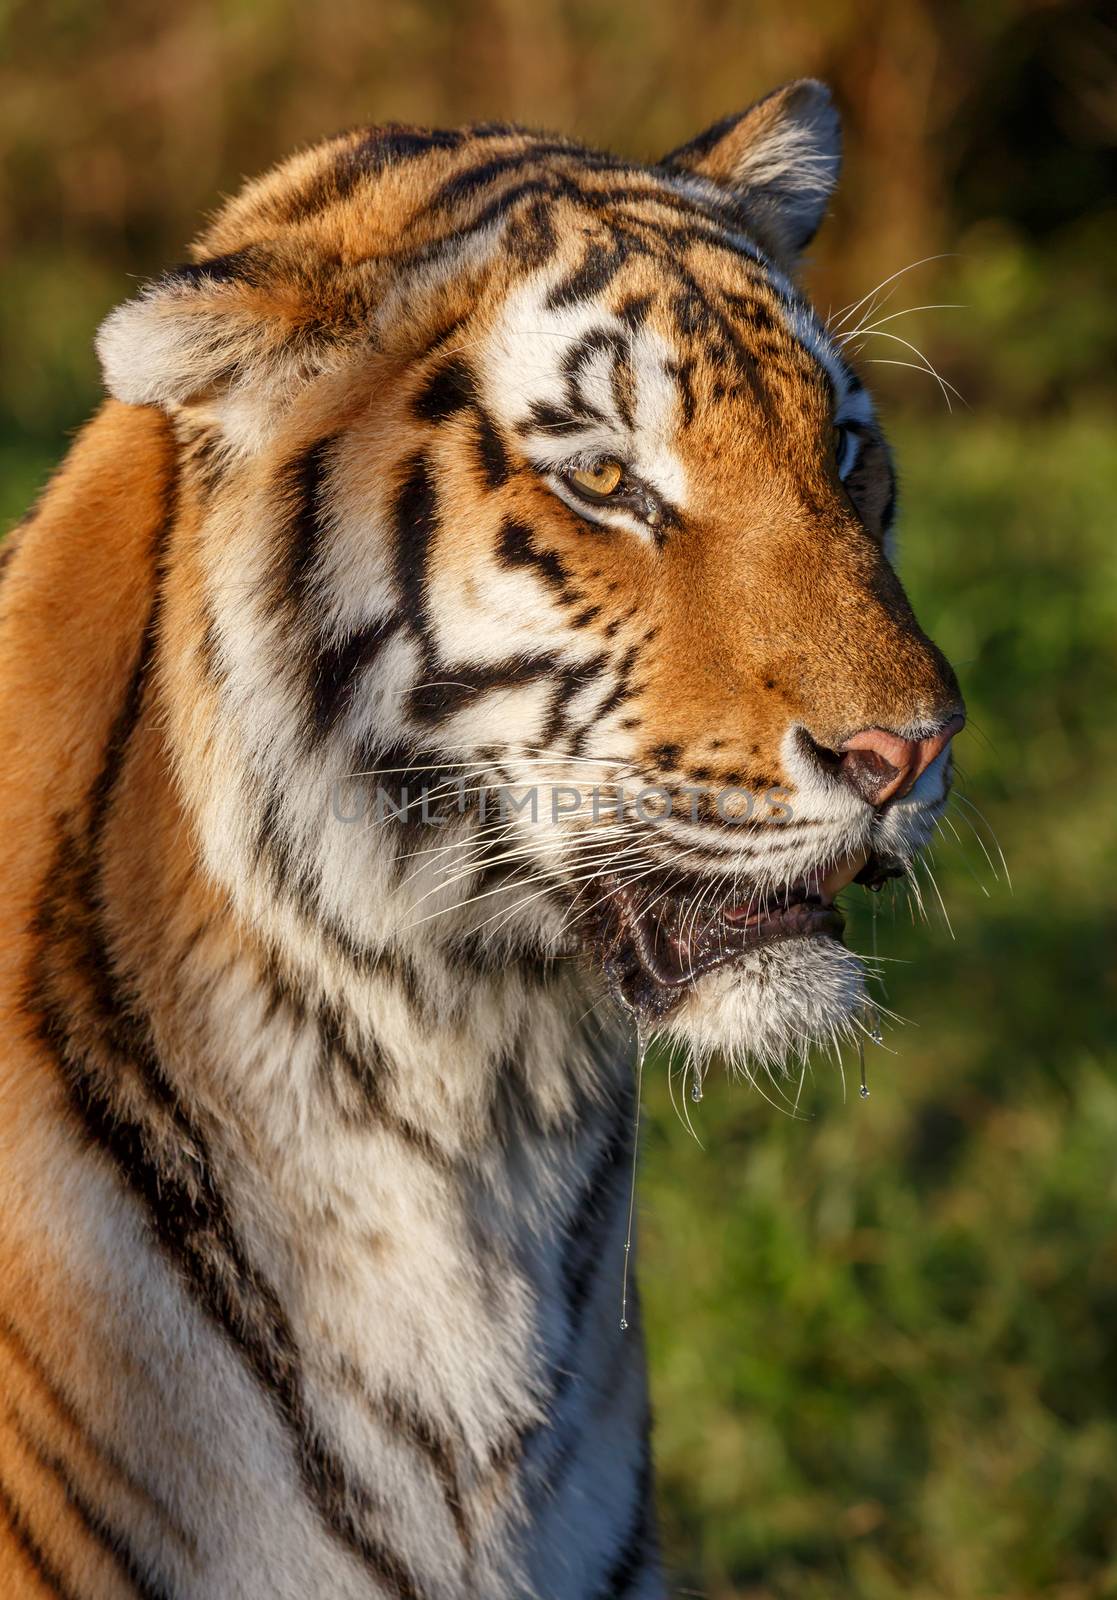 Tiger Wild Cat by fouroaks